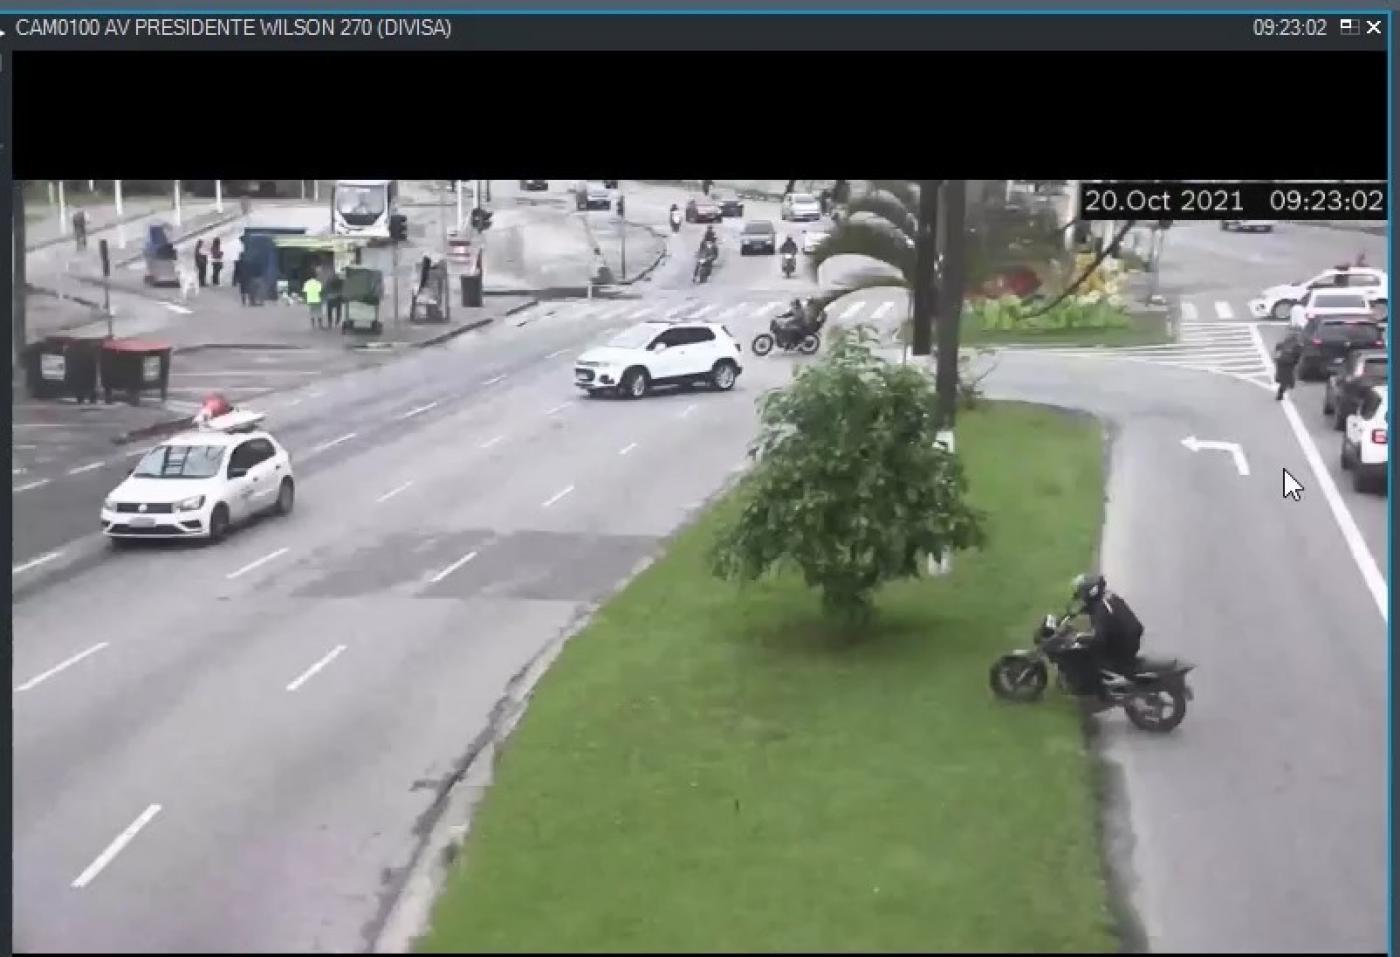 Moto atravessando para outro lado da avenida pelo jardim #paratodosverem